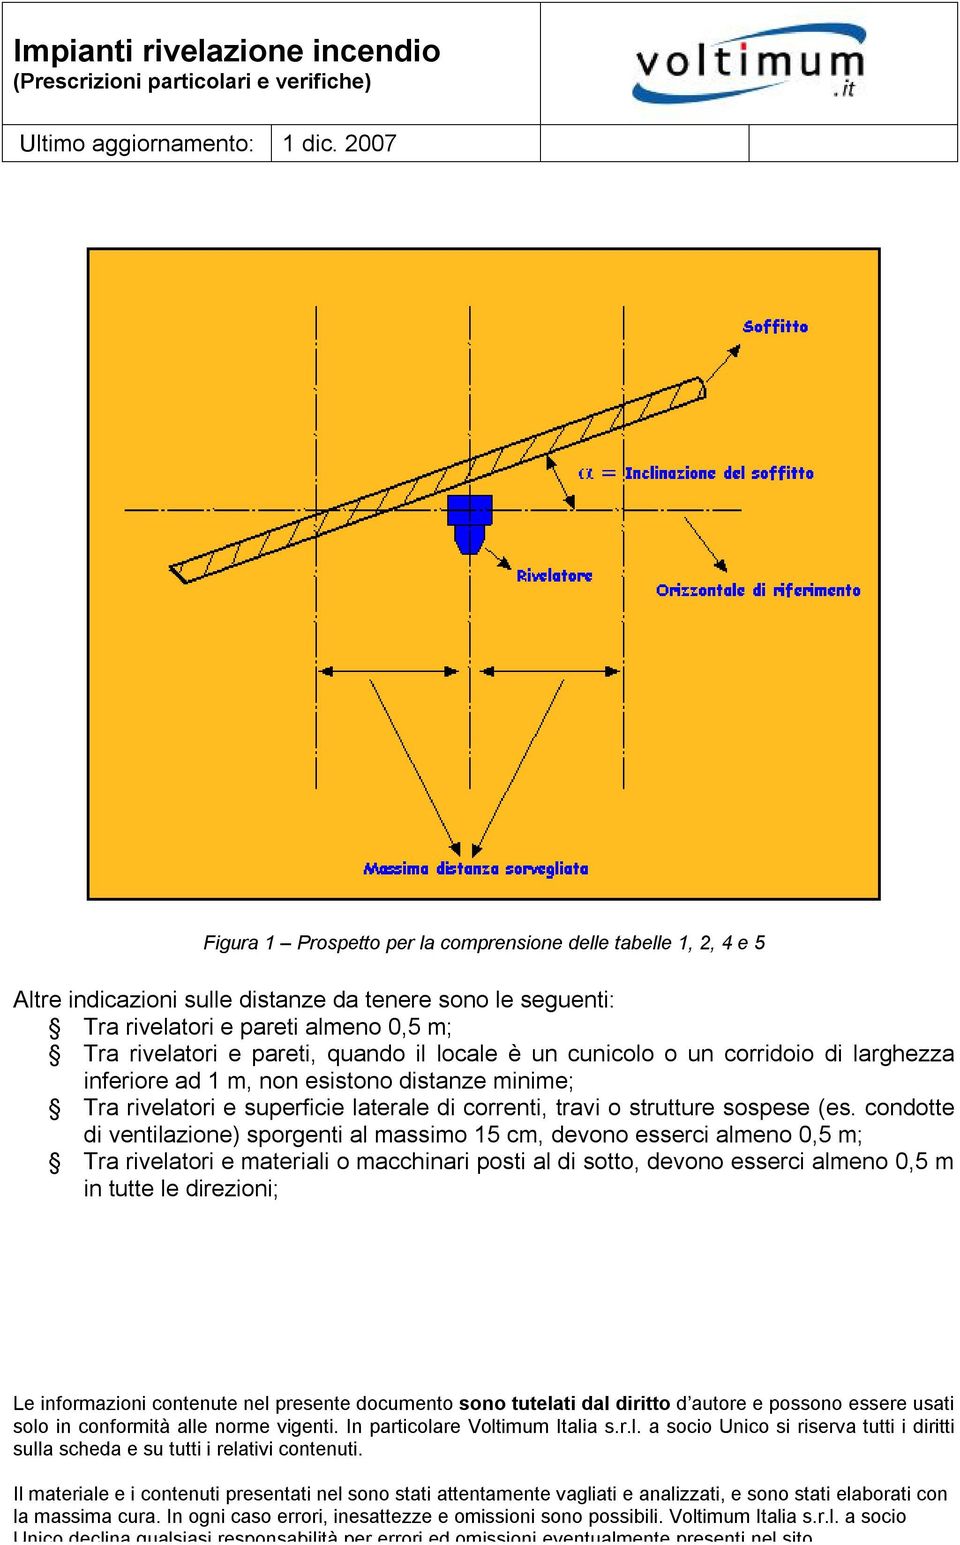 distanze minime; Tra rivelatori e superficie laterale di correnti, travi o strutture sospese (es.